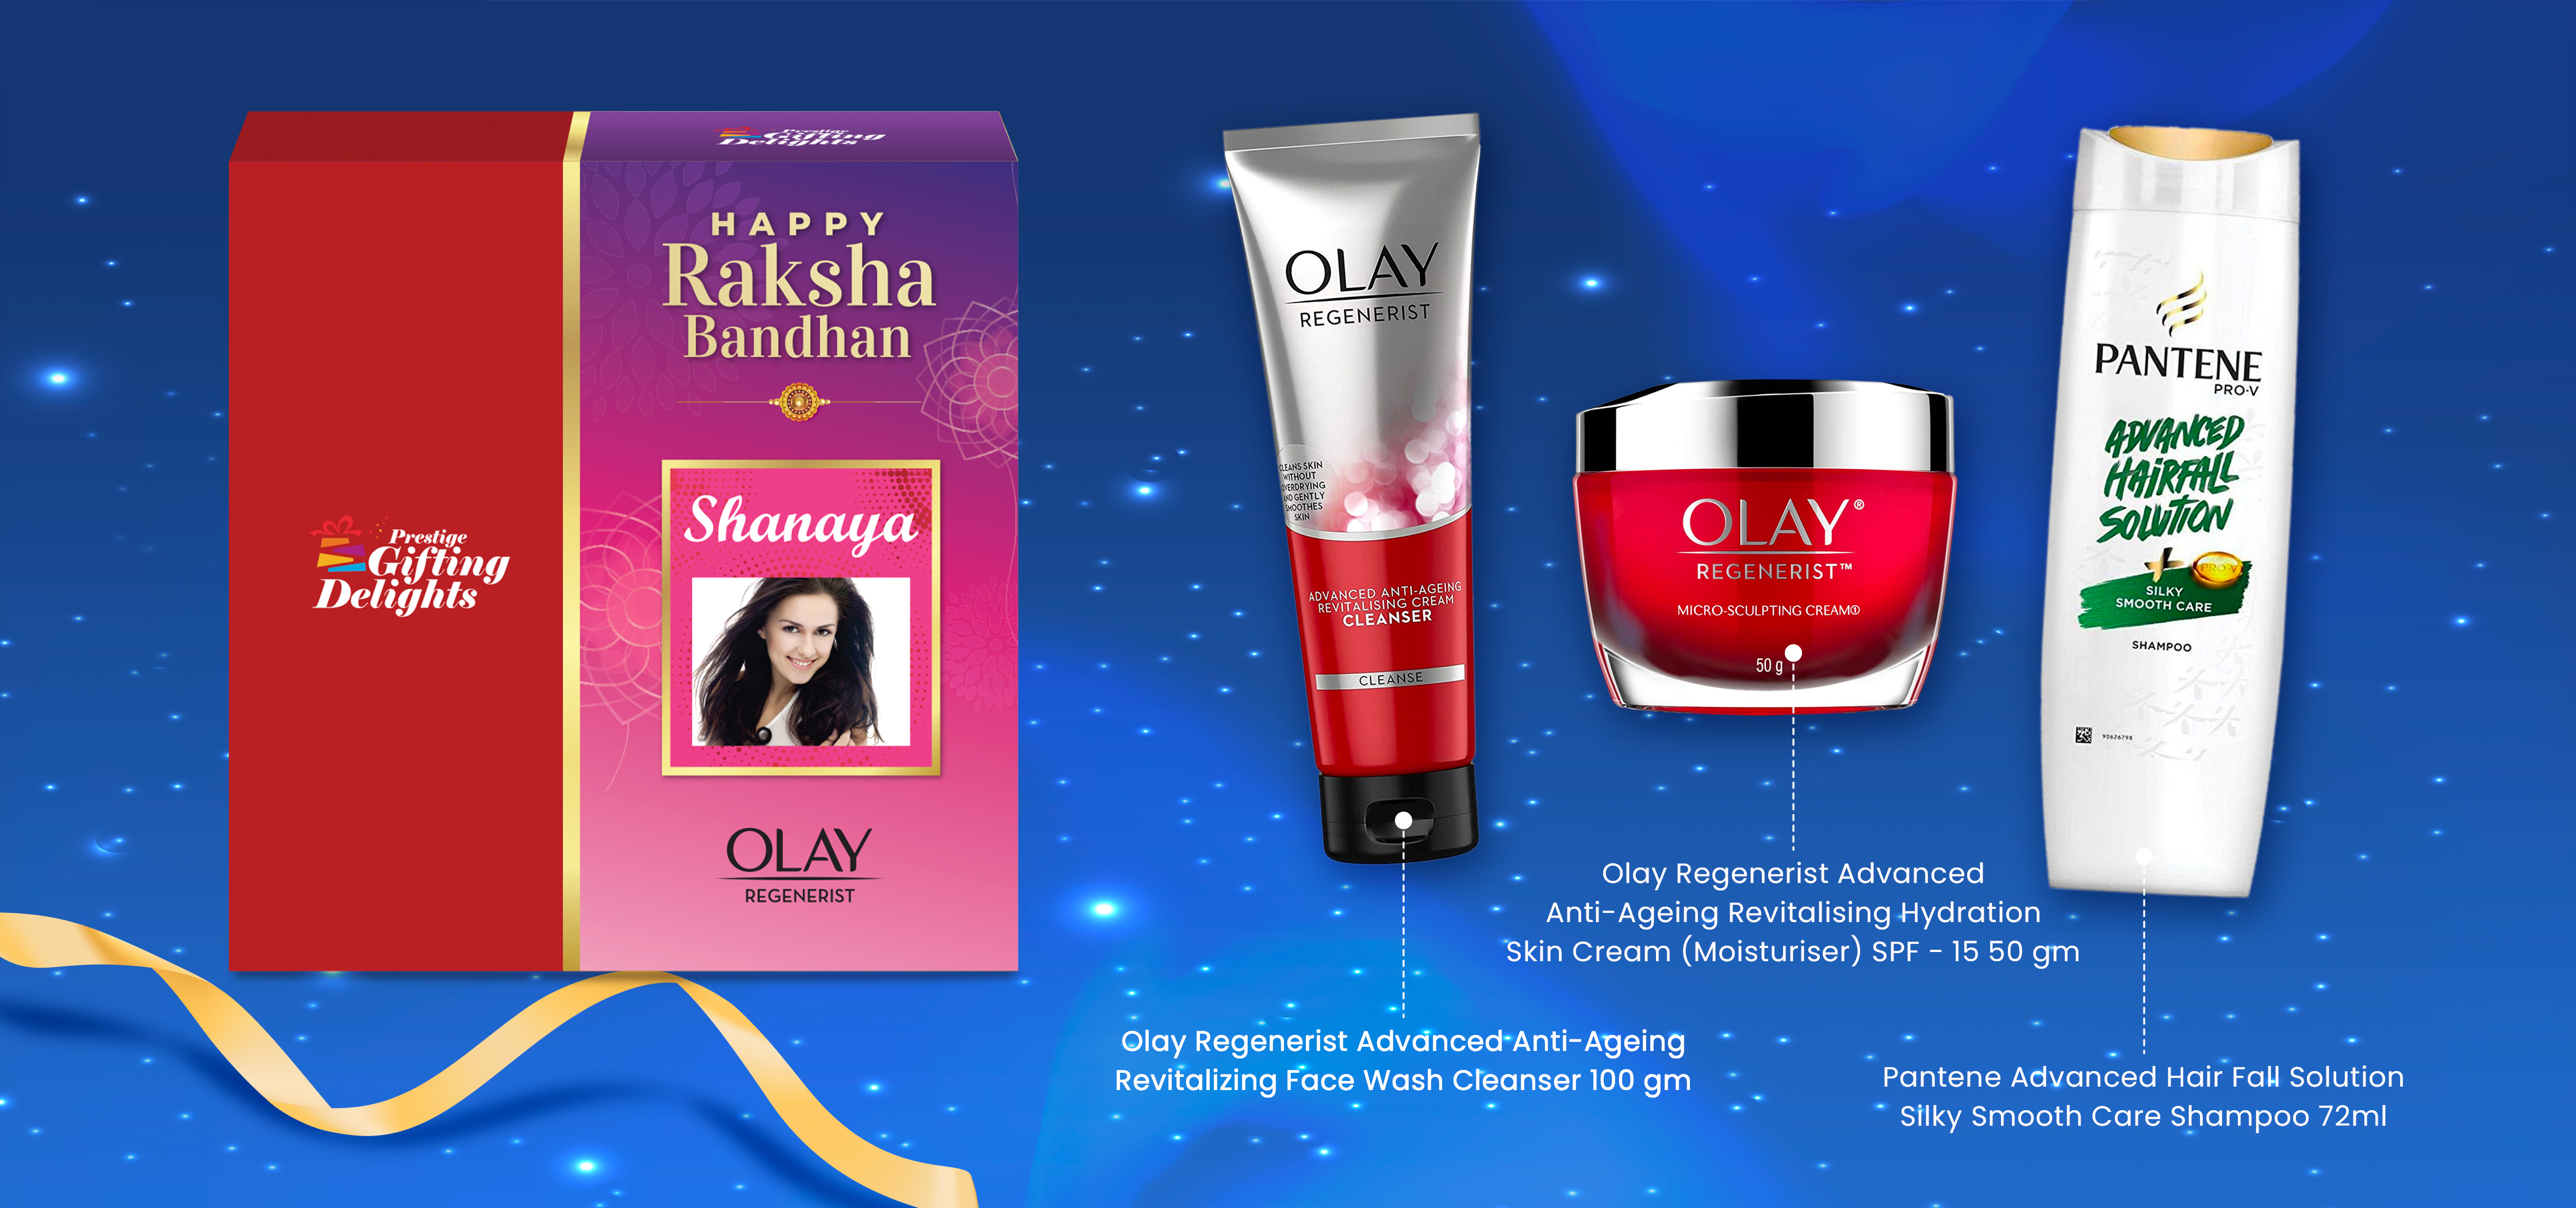 Advanced Hair and Skincare Rakhi Gift pack for Women